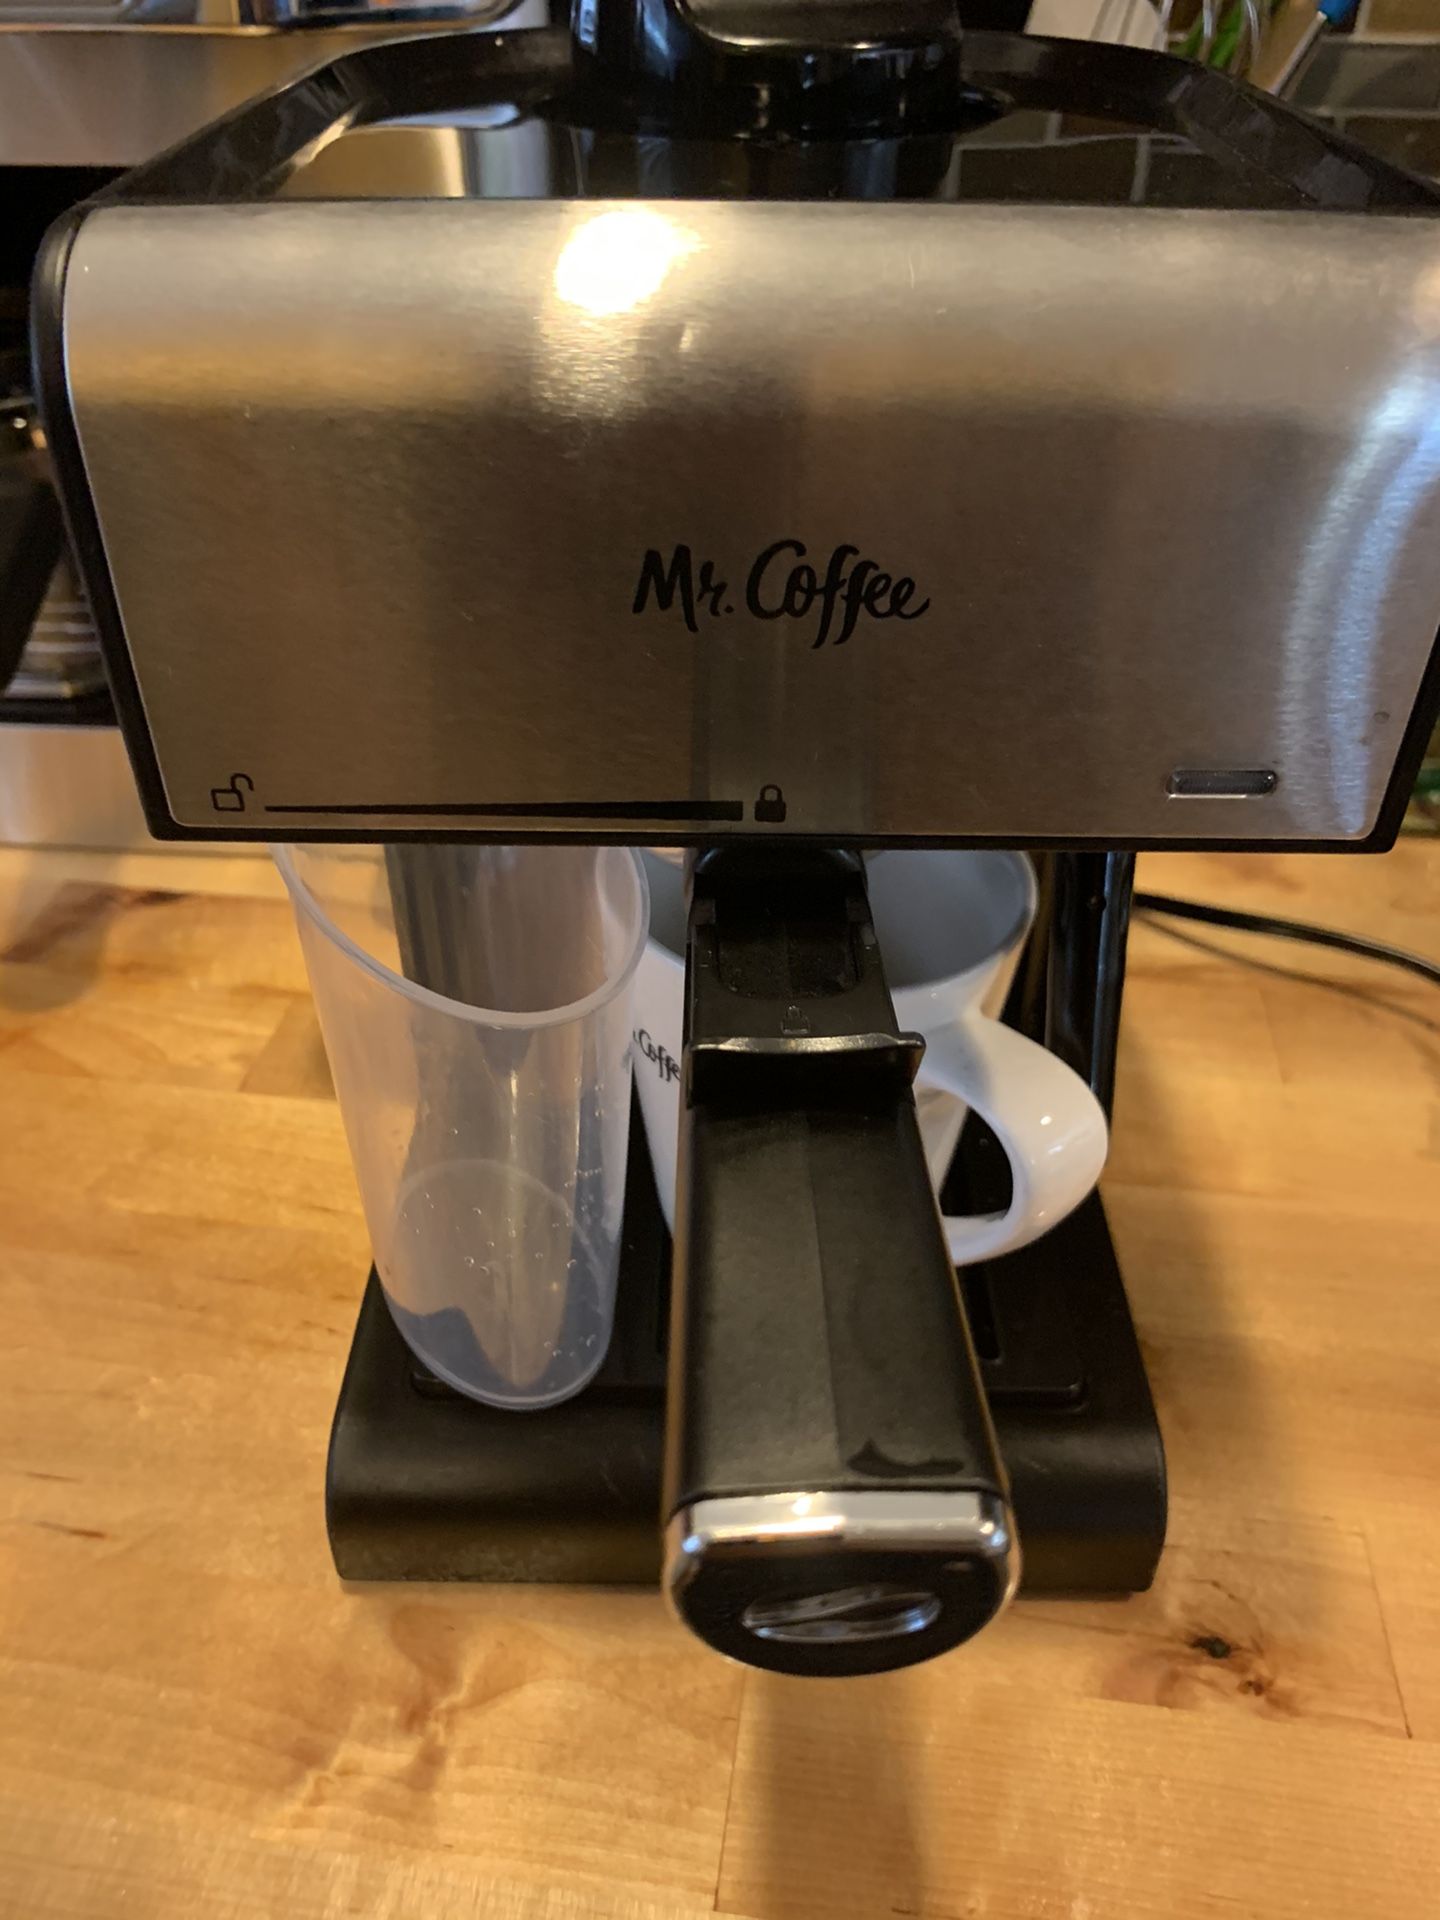 Mr.coffee and espresso machine